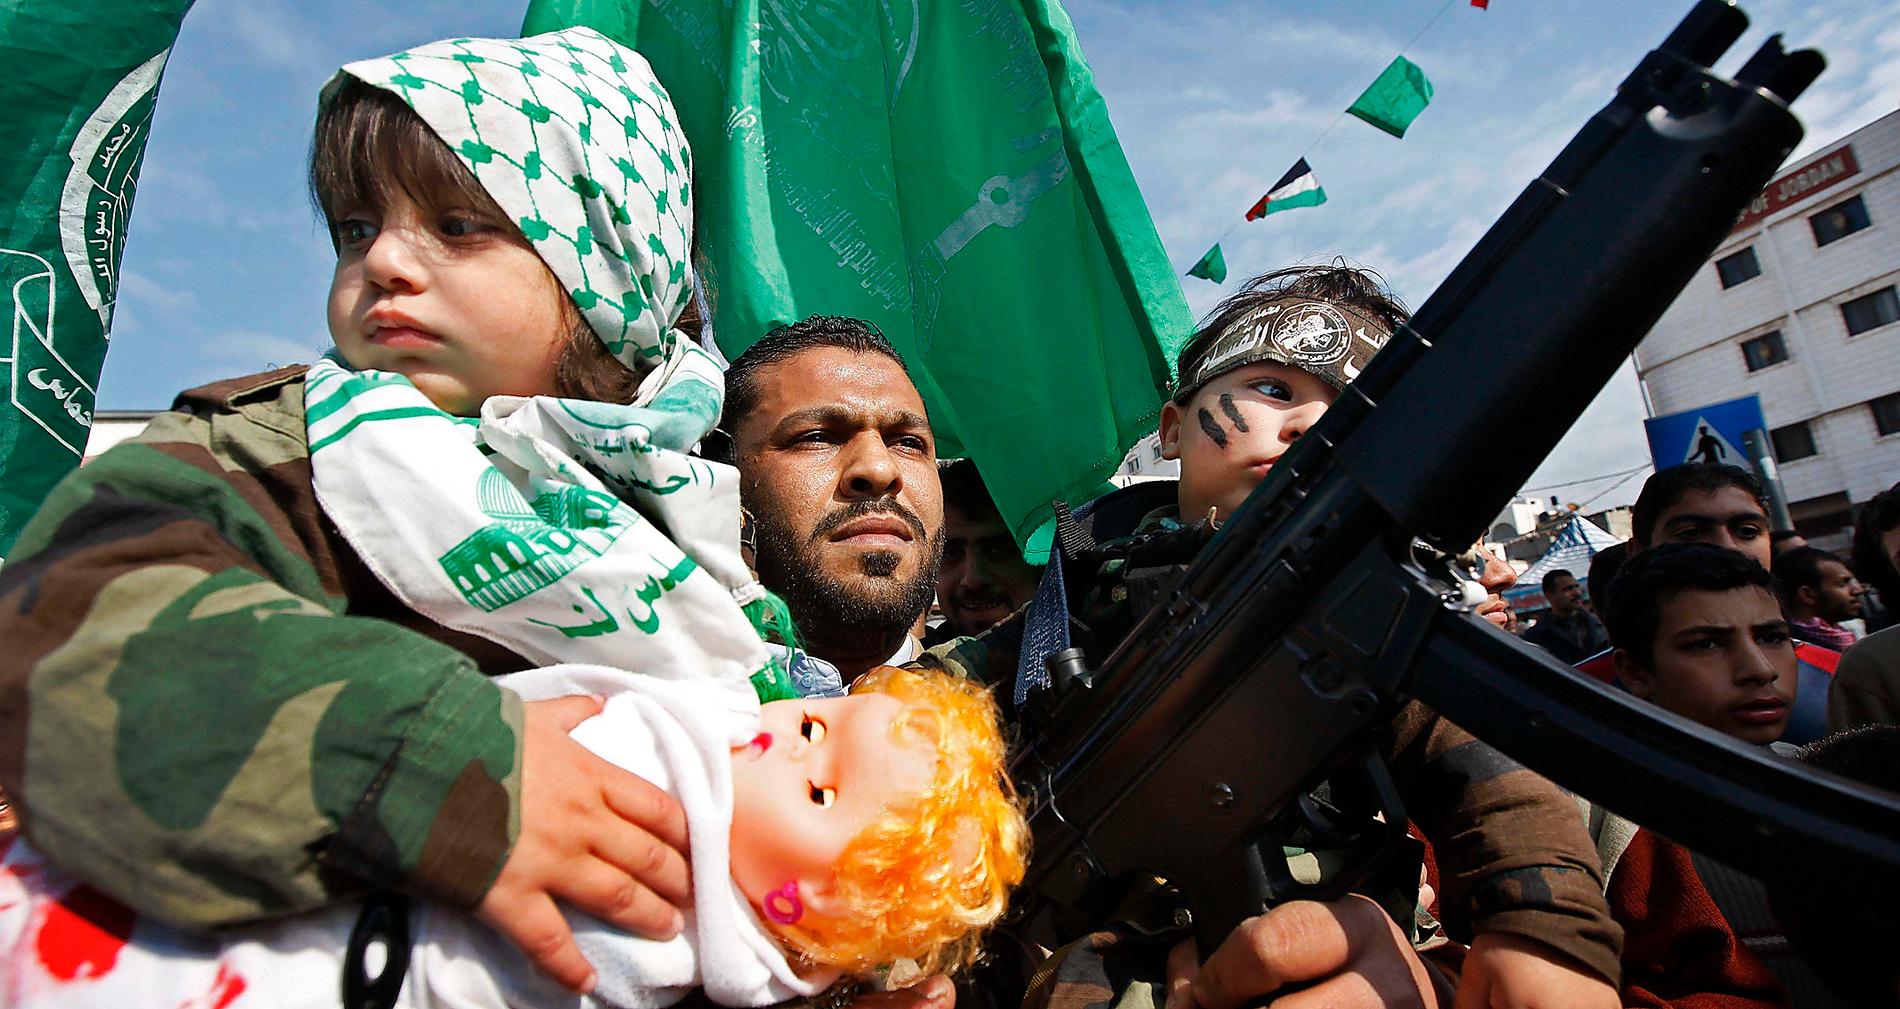 hyllad rörelse En militant Hamas-anhängare demonstrerar i Gaza city. Skribenten Daniel Suhonen ifrågasätter många vänsterdebattörers stöd för islamistiska organisationer.